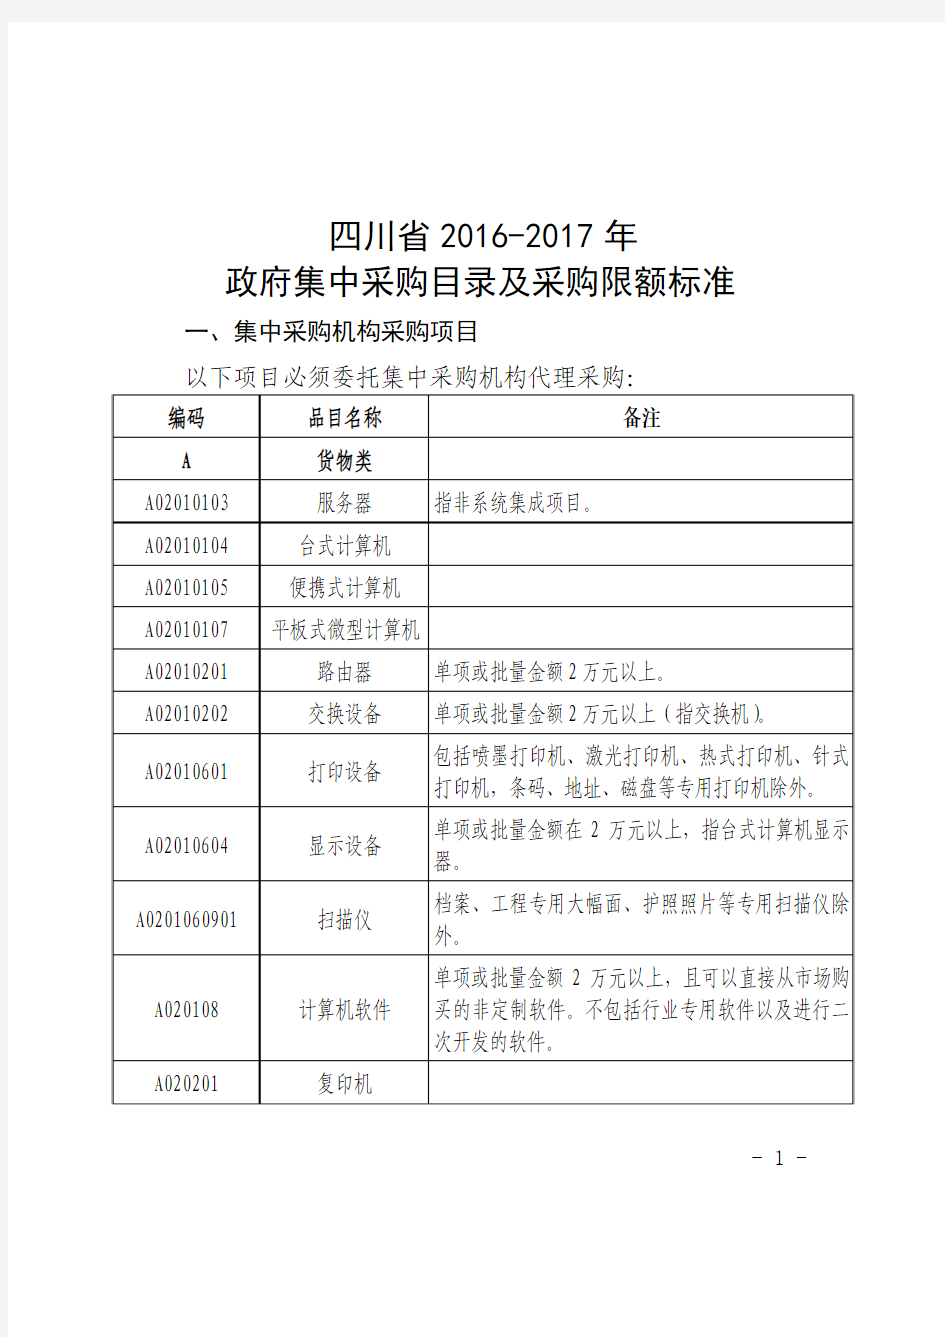 四川省2016-2017年政府集中采购目录及采购限额标准